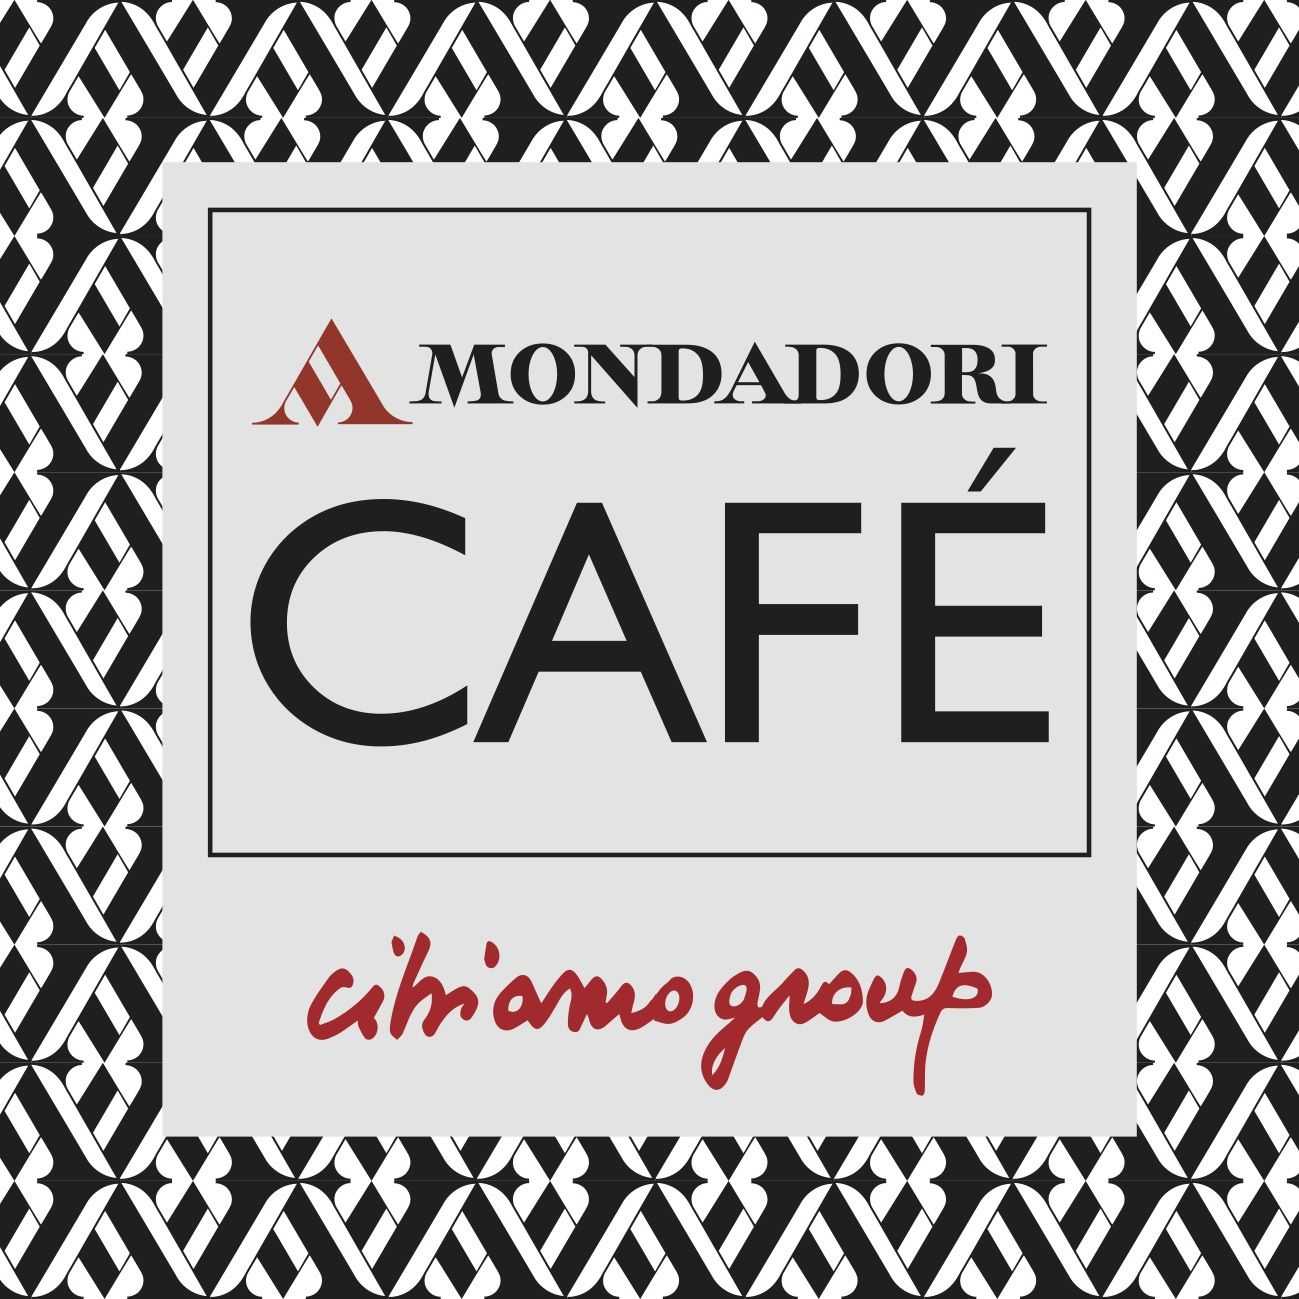 LOGO MONDADORI CAFé